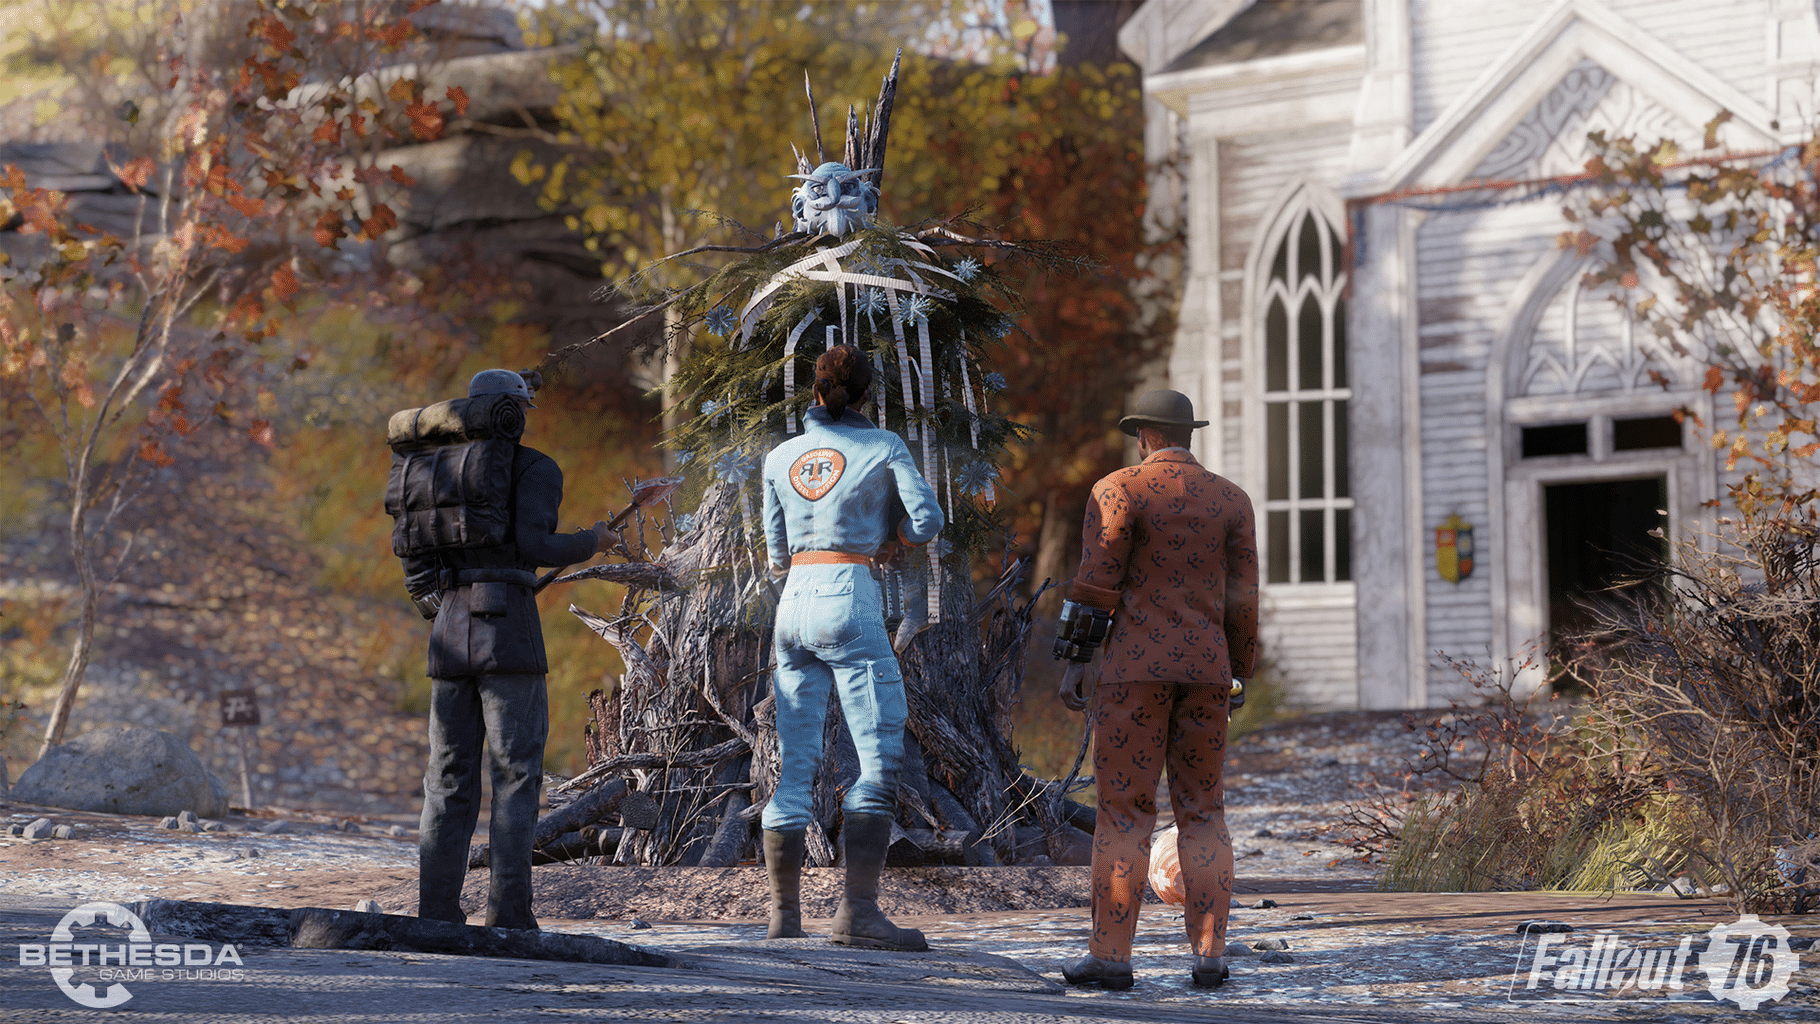 Fallout 76: Wild Appalachia screenshot